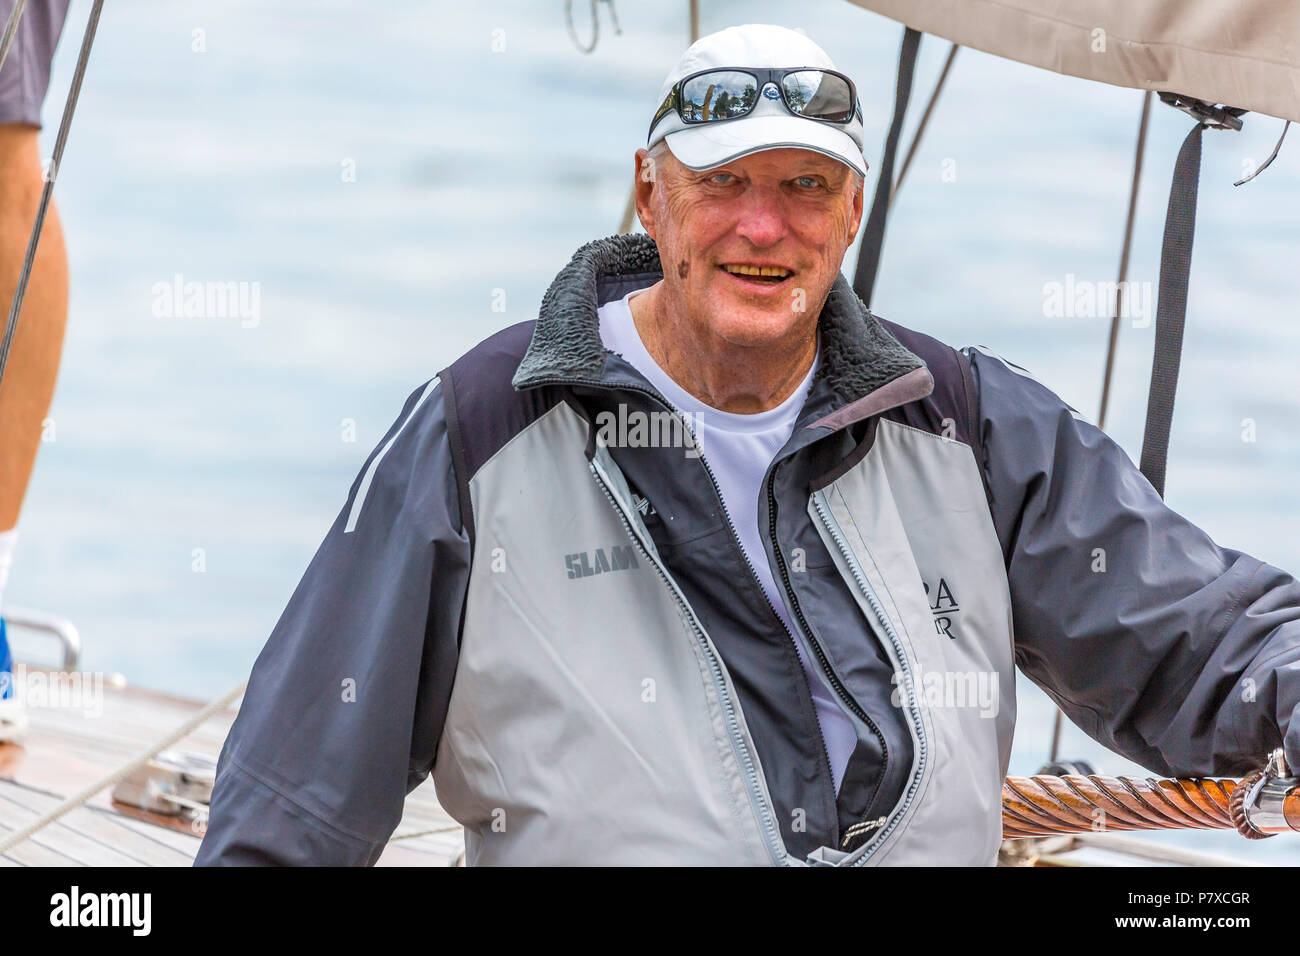 8mR World Championship 2018, Yacht Club Langenargen, Lake of Constance. König Harald V. von Norwegen. Stock Photo